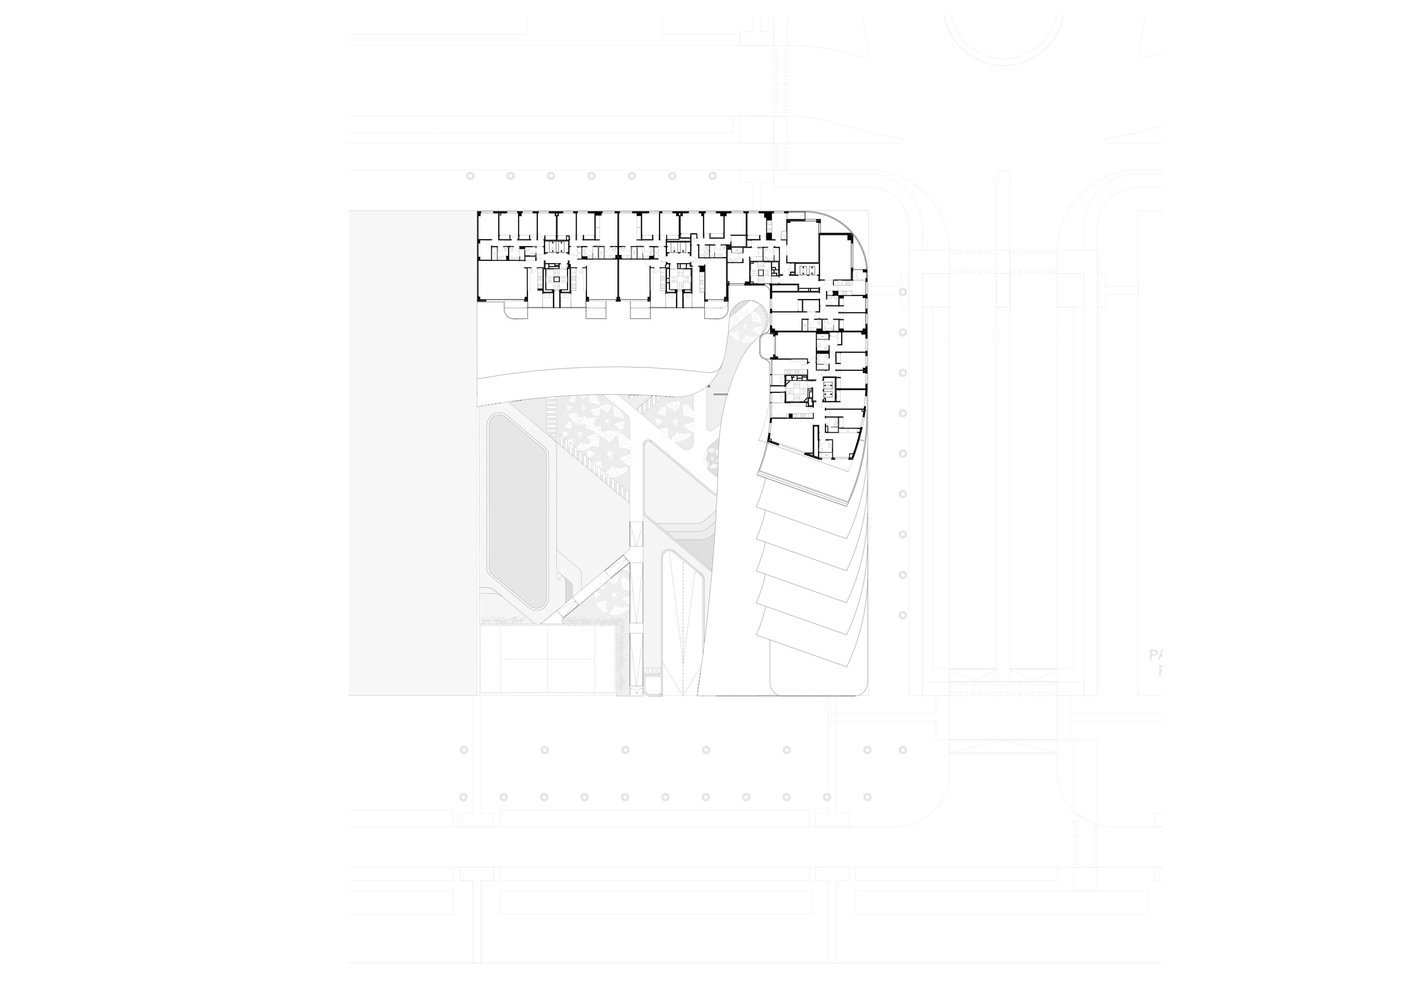 西班牙马德里湖畔露台公寓建筑设计/Morph Studio